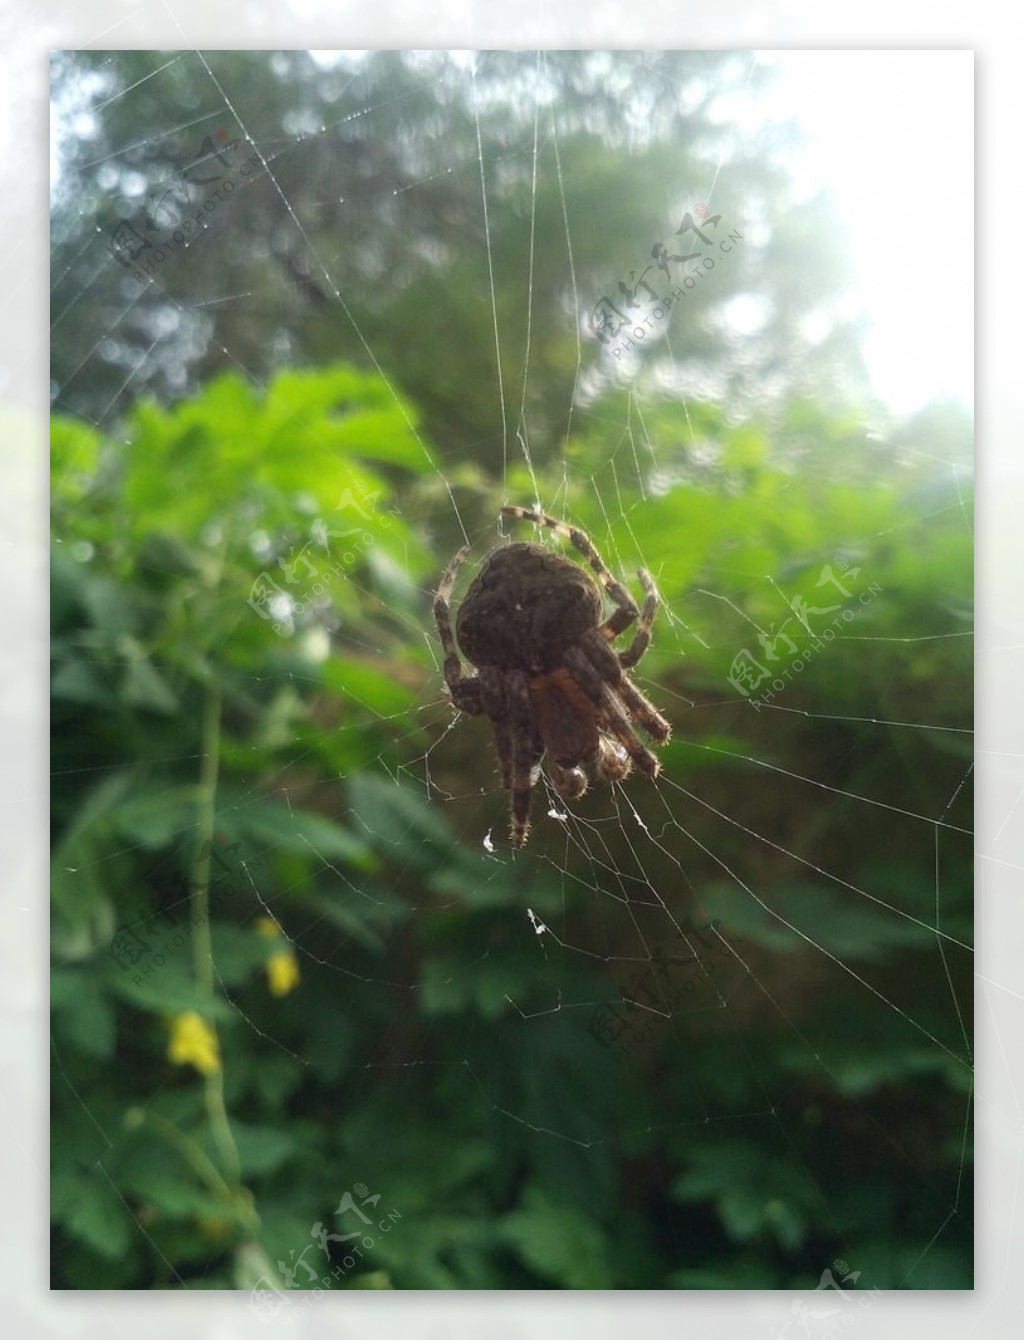 阳光下的蜘蛛网